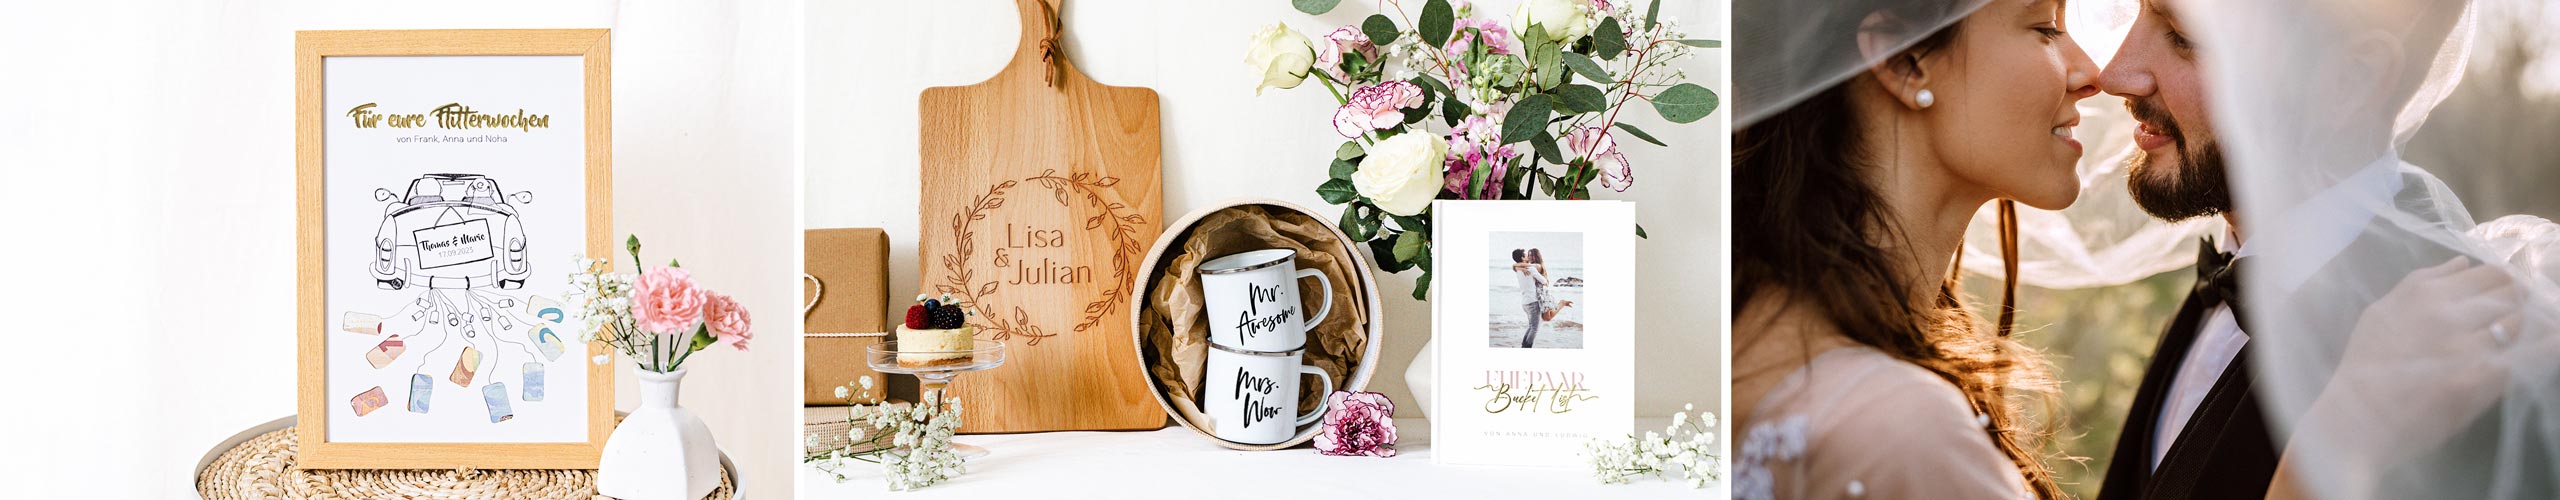 Personalisierte Tassen, Brotzeitbretter und Wandbilder als Geschenkideen zur Hochzeit